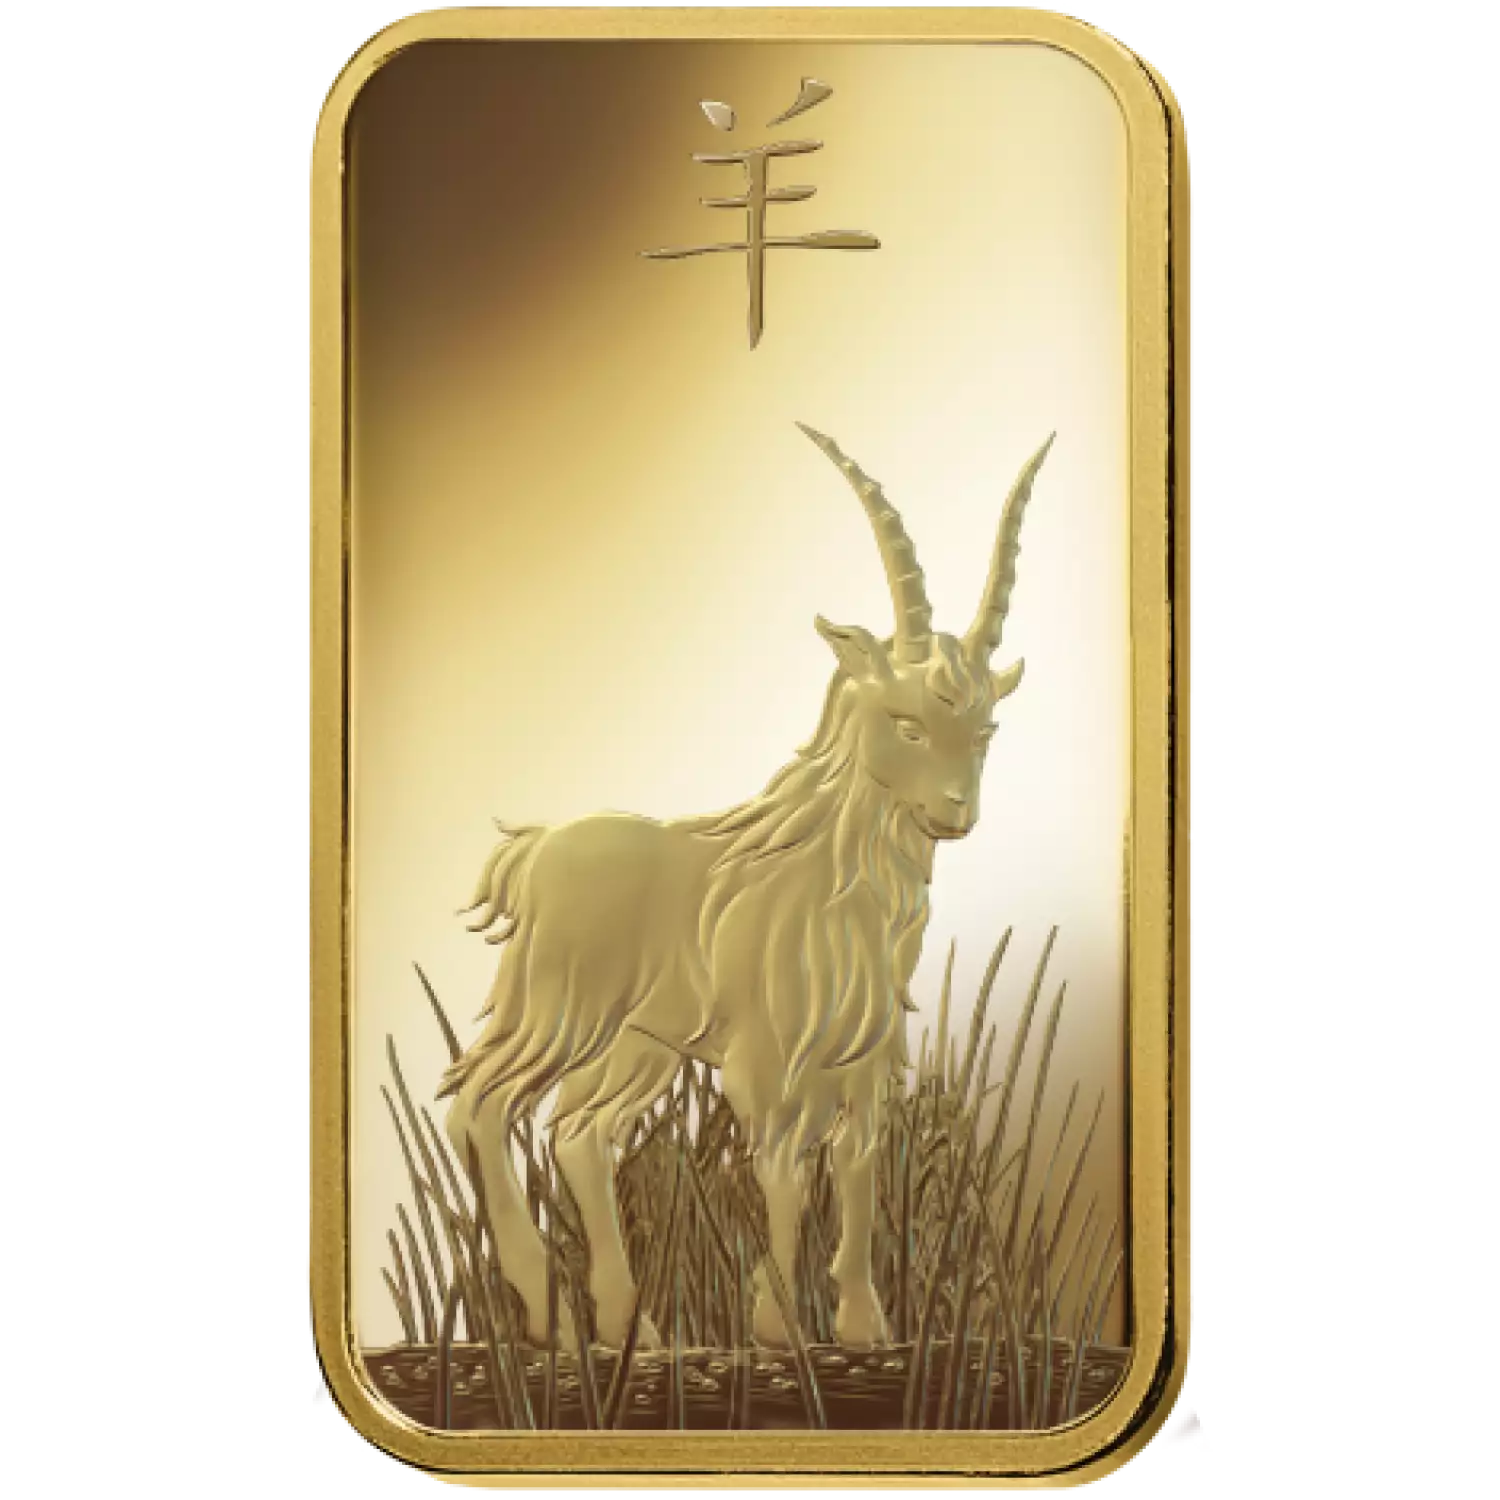 5g PAMP Gold Bar - Lunar Goat (3)